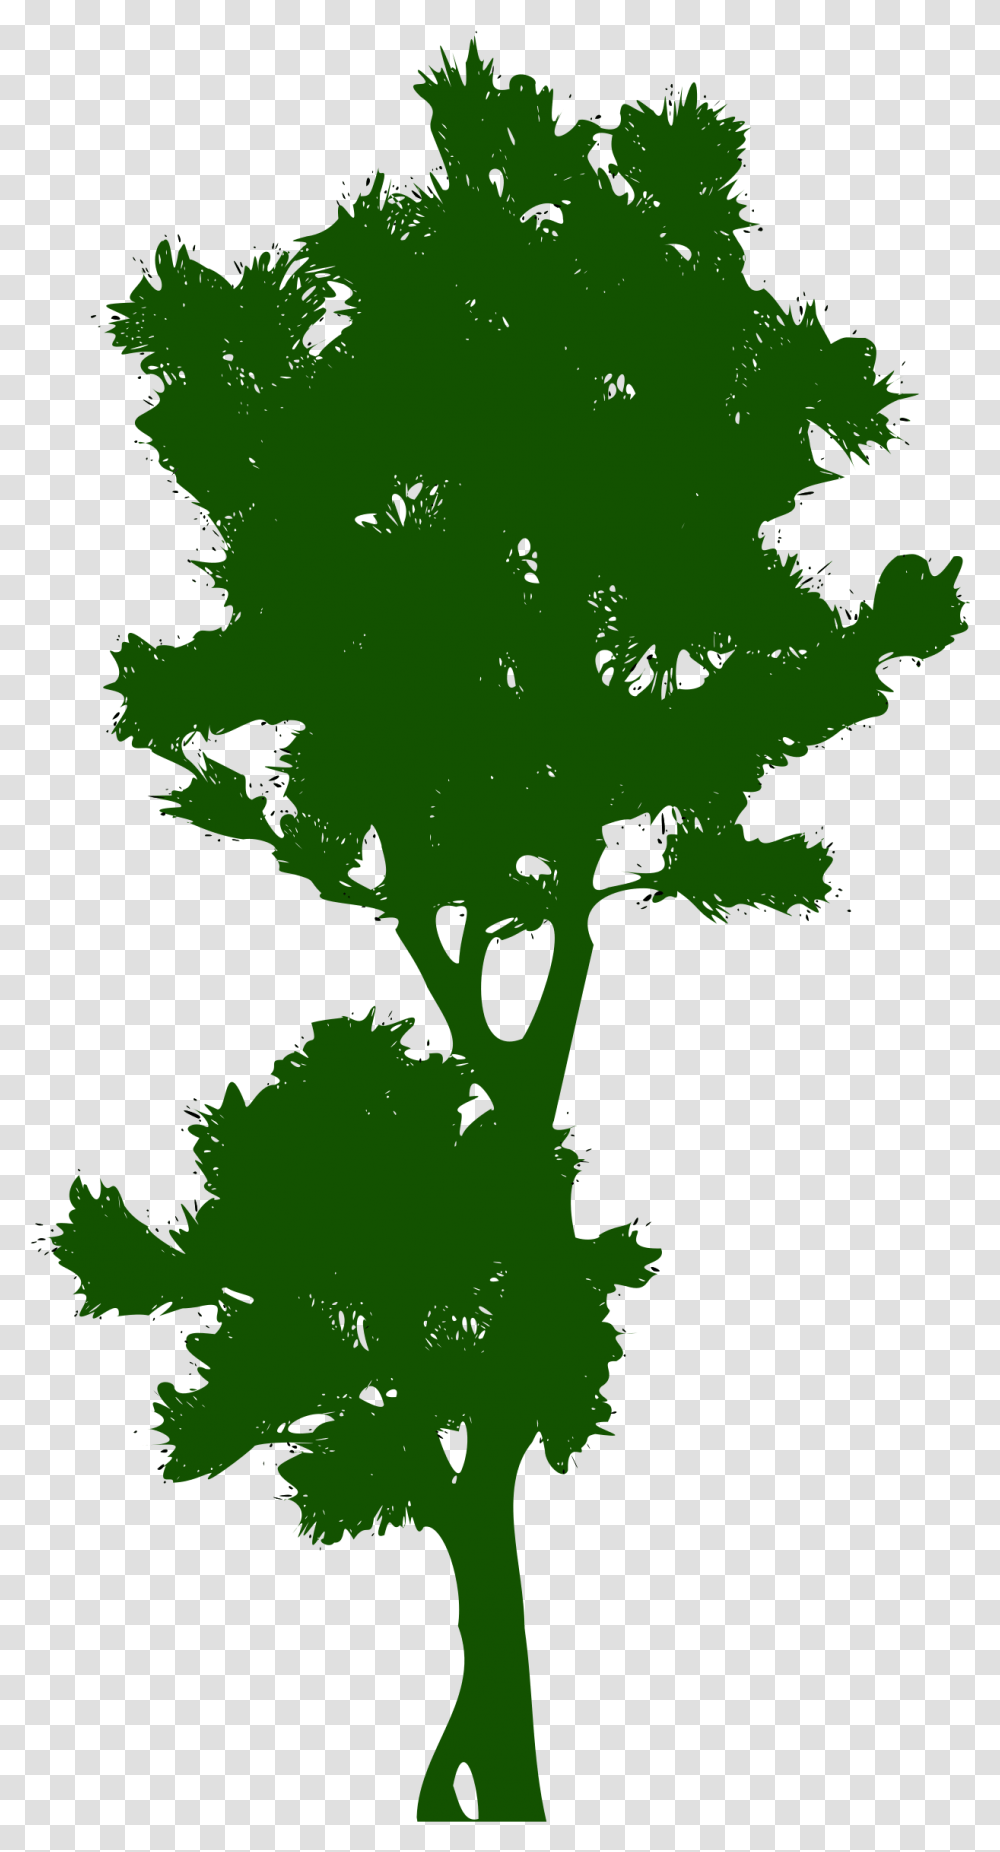 Tree Public Domain Clip Art Pohon Tinggi Vektor, Plant, Leaf, Vegetation, Green Transparent Png